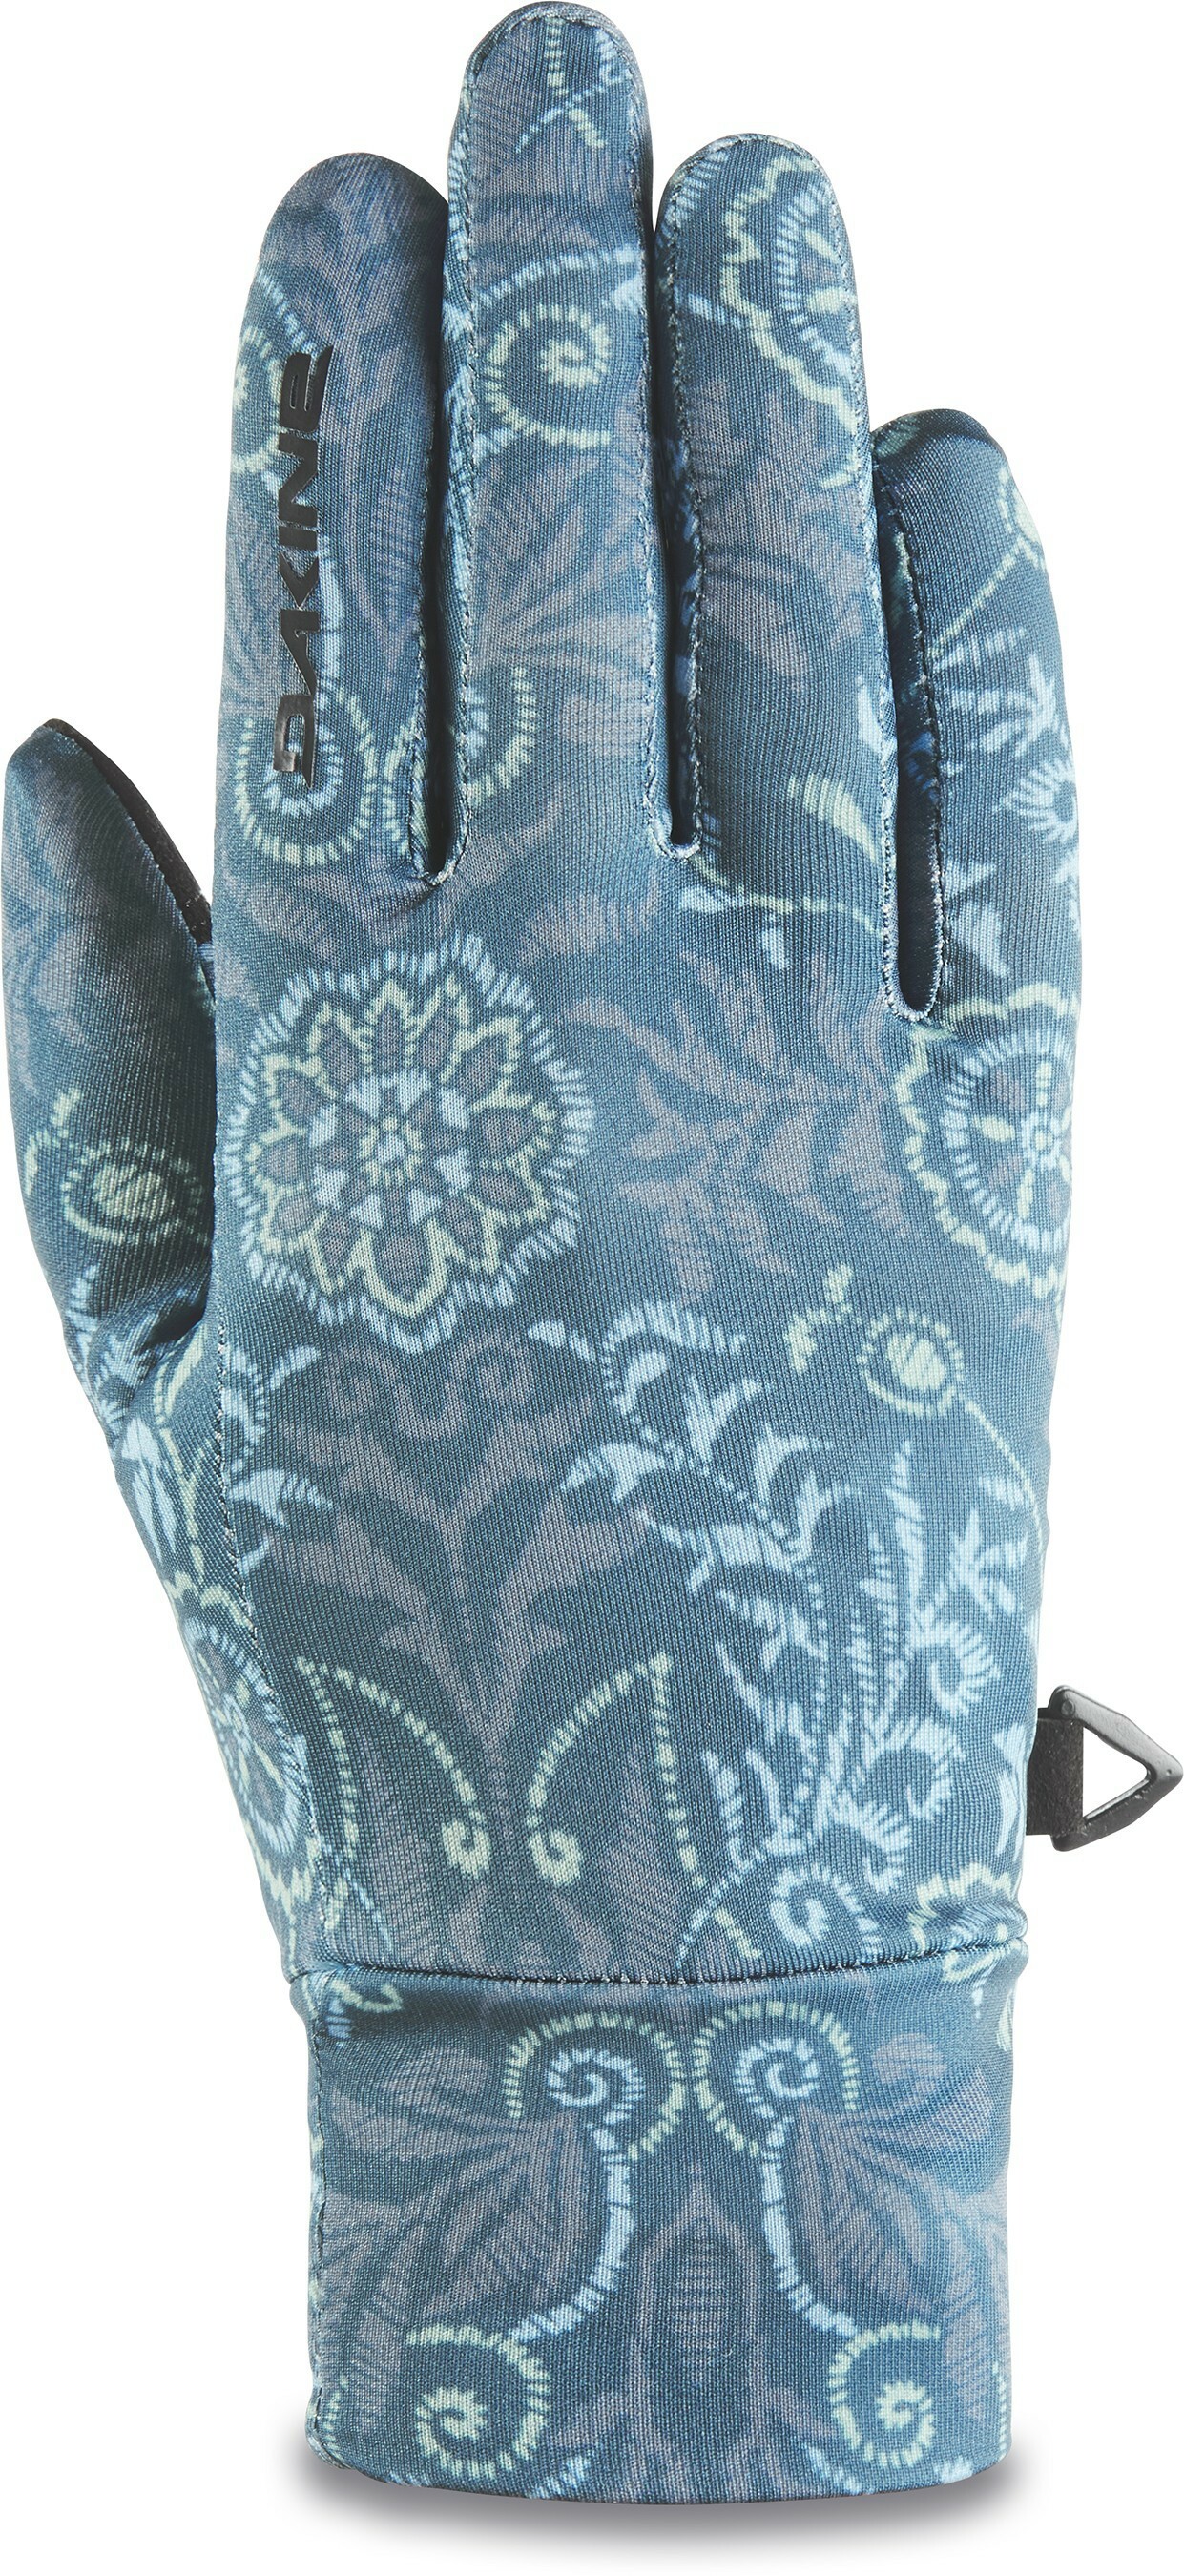 Rambler Liner Glove - Women's